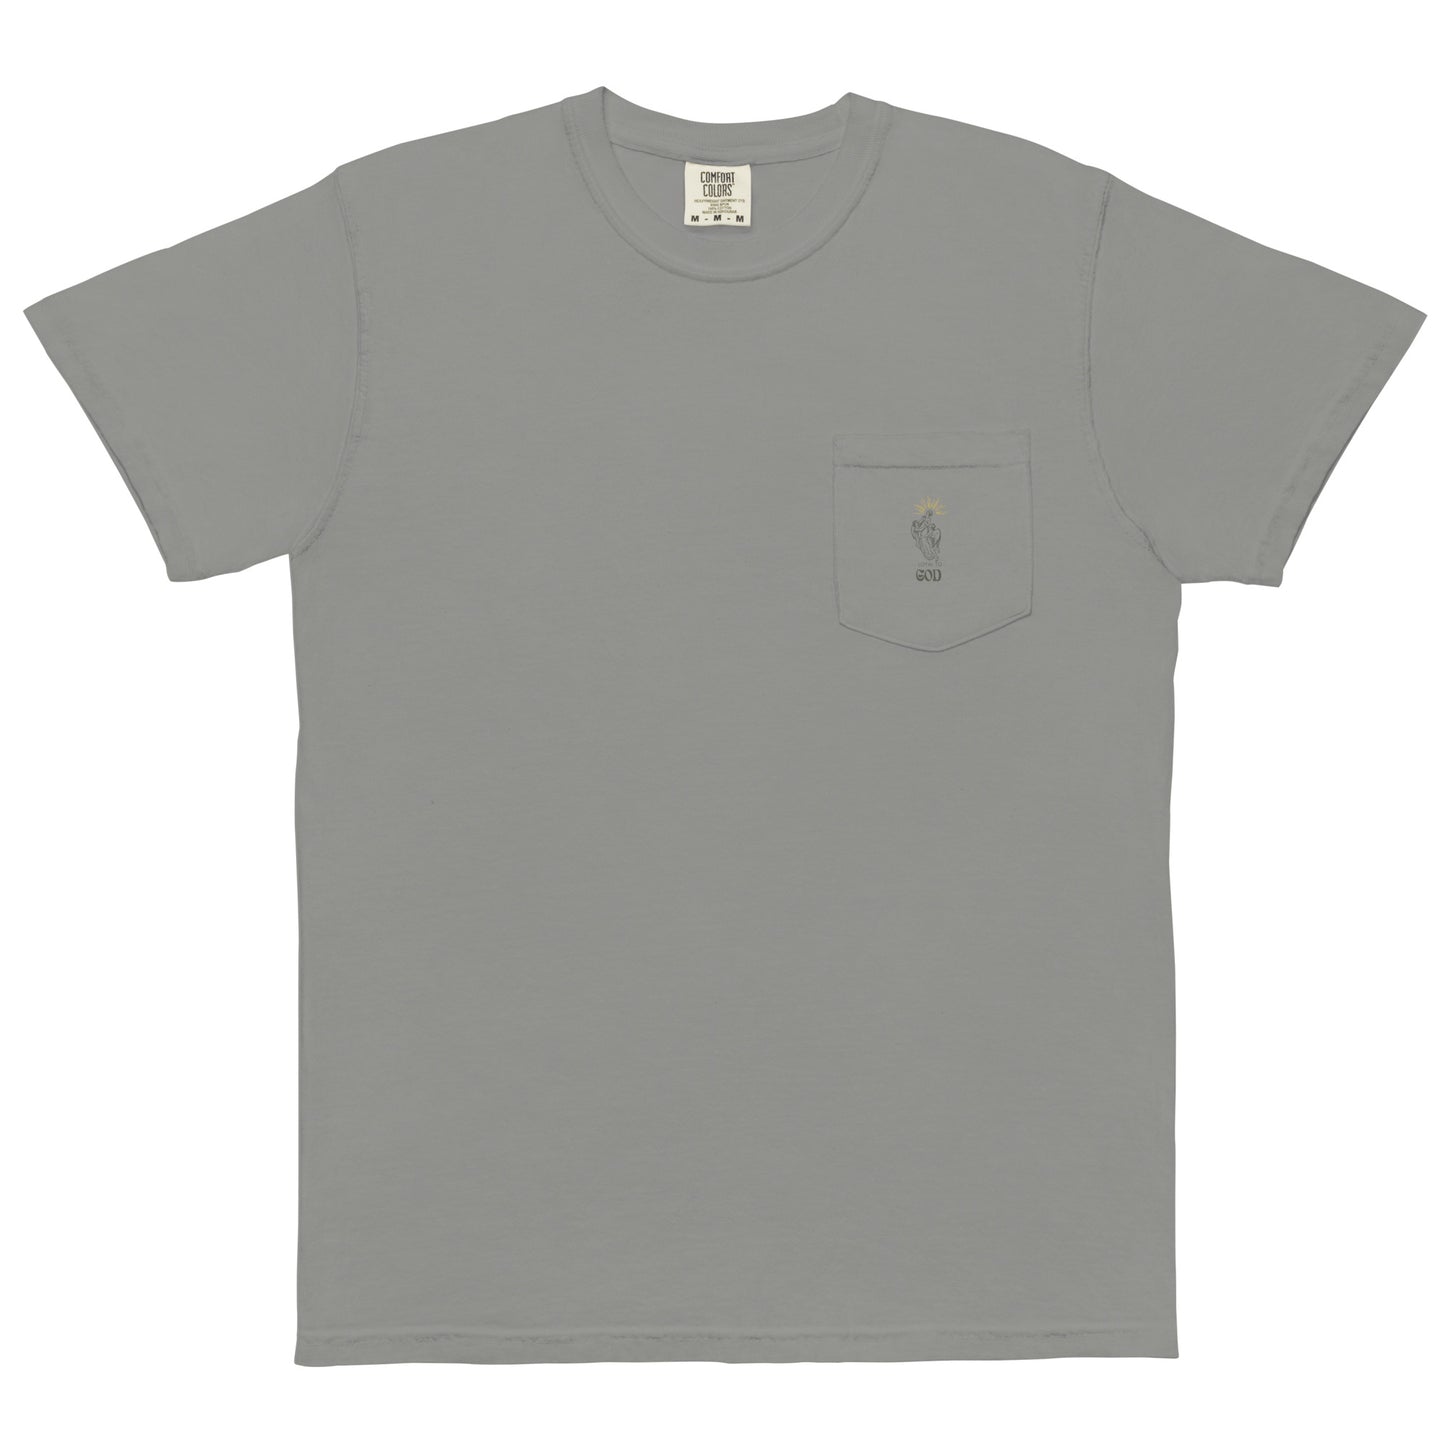 Loyal To God Unisex garment-dyed pocket t-shirt